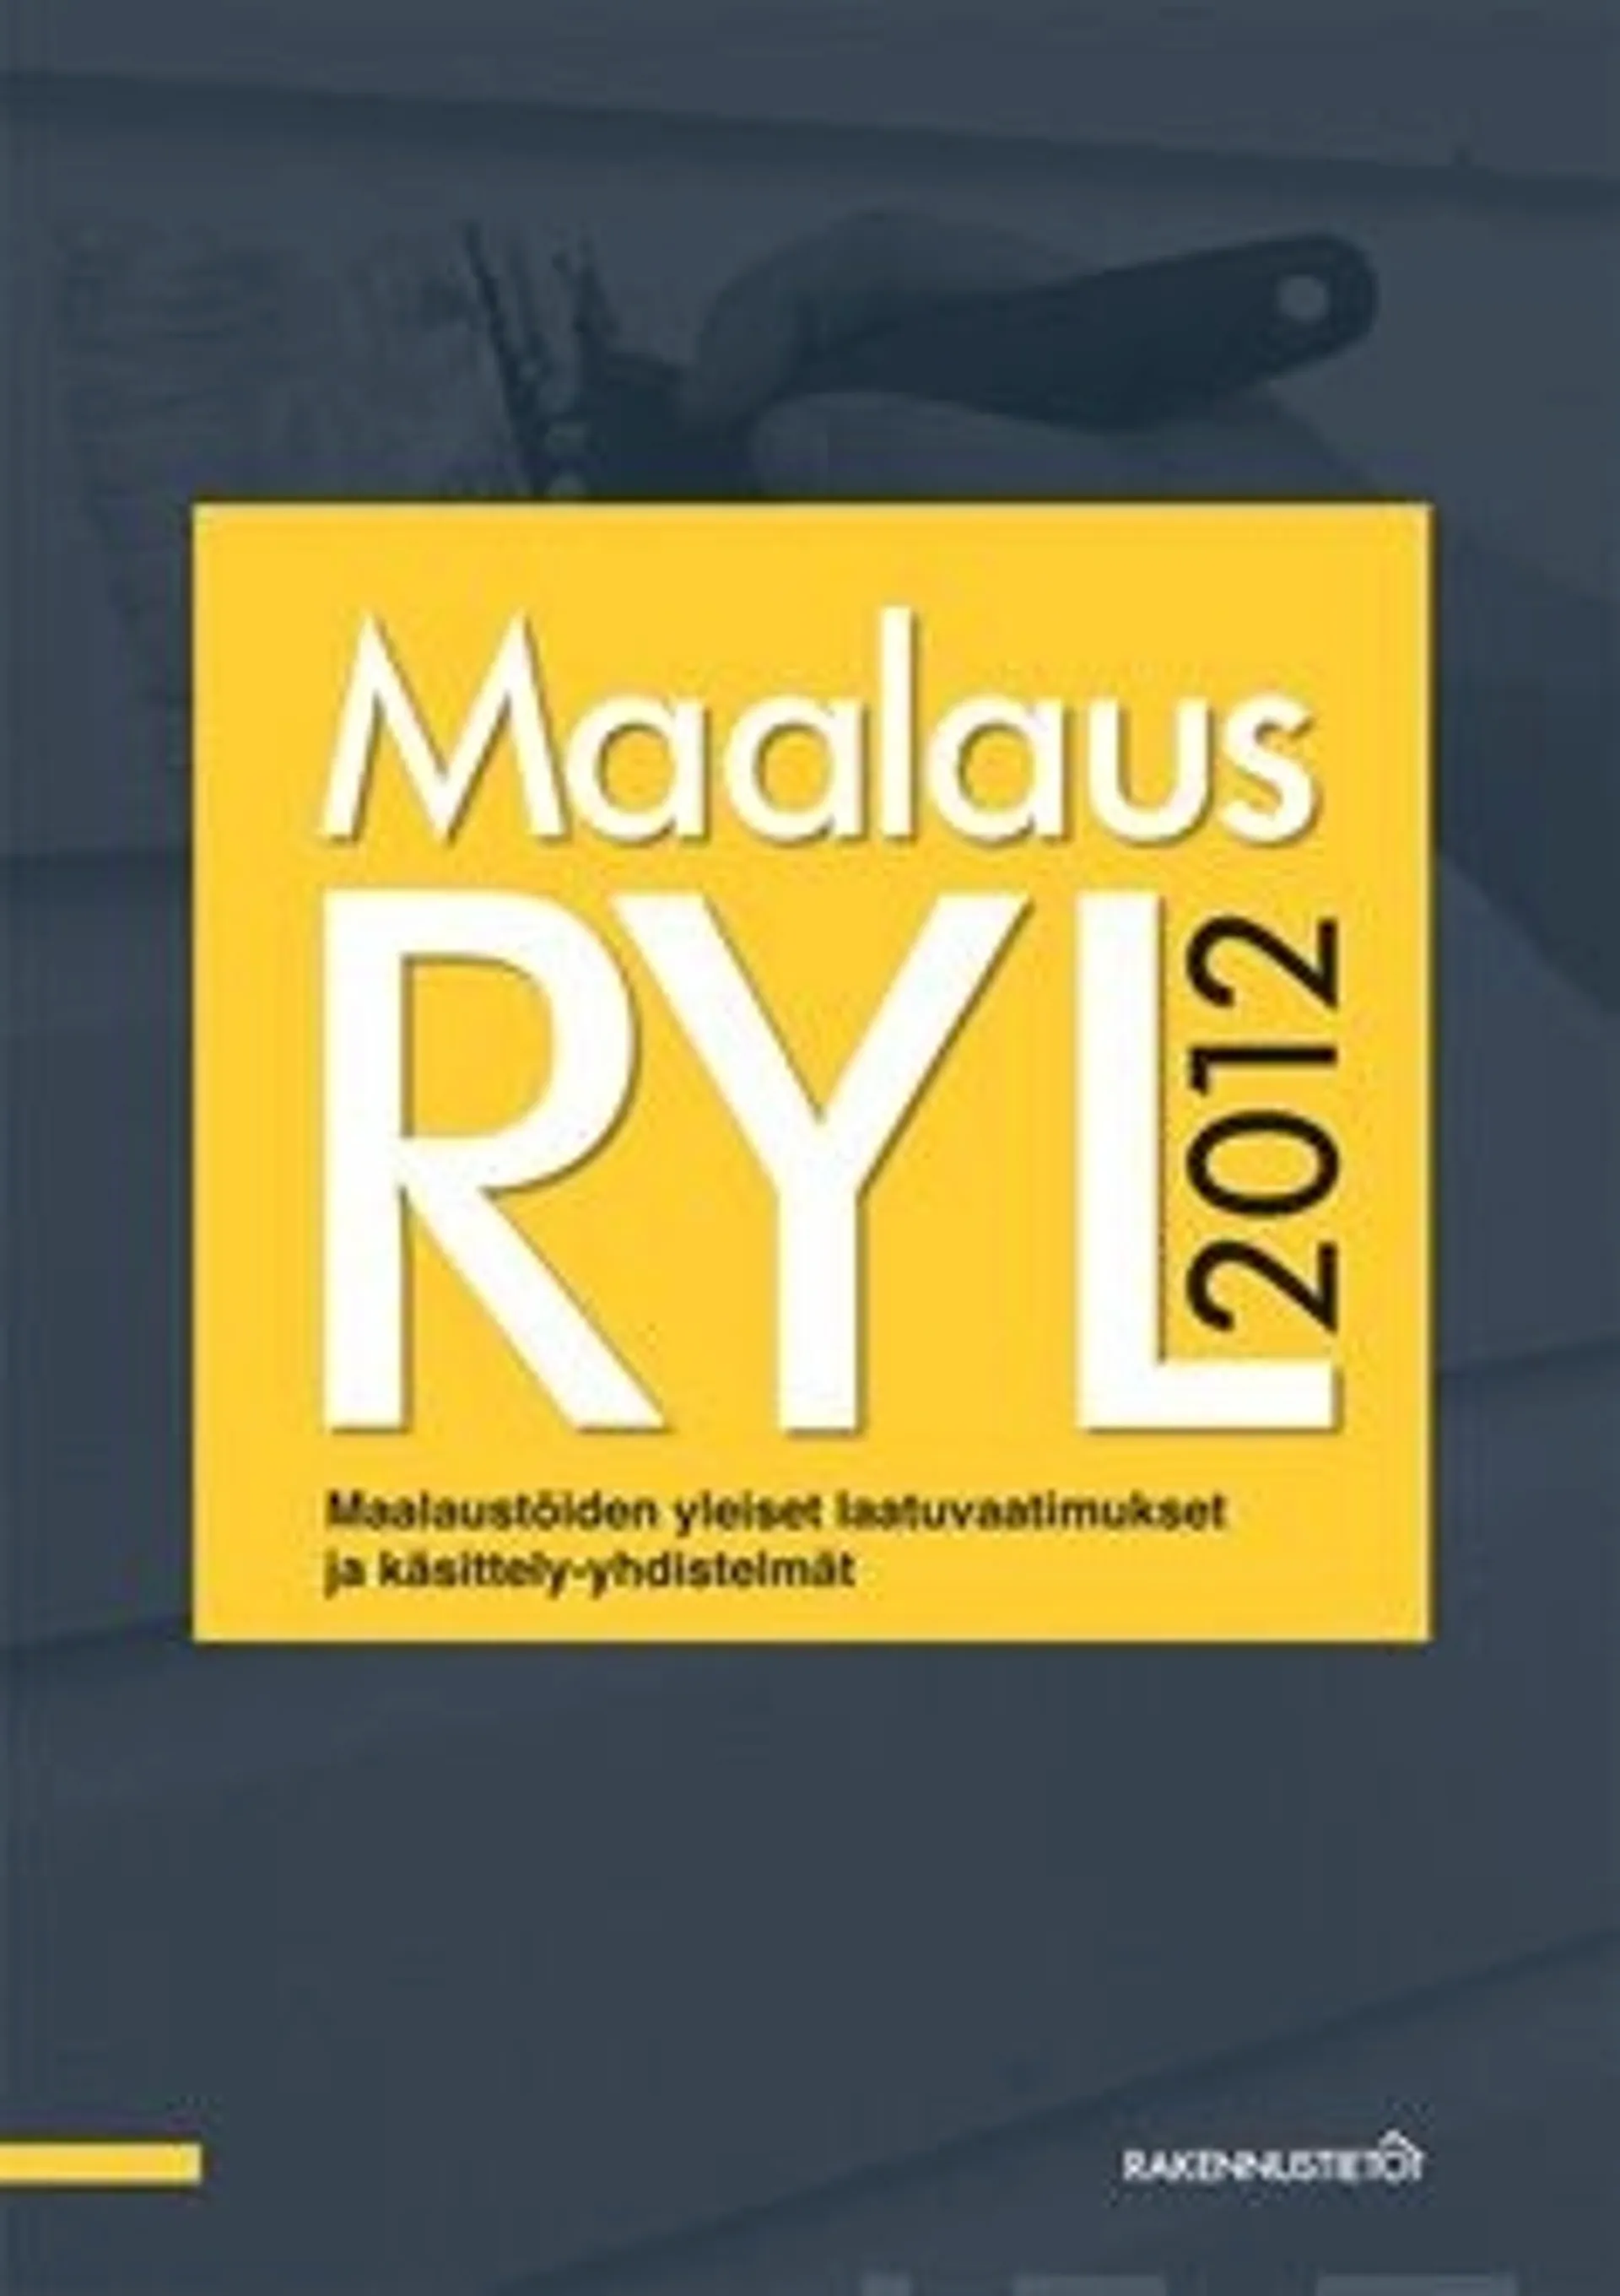 MaalausRYL 2012 - maalaustöiden yleiset laatuvaatimukset ja käsittely-yhdistelmät